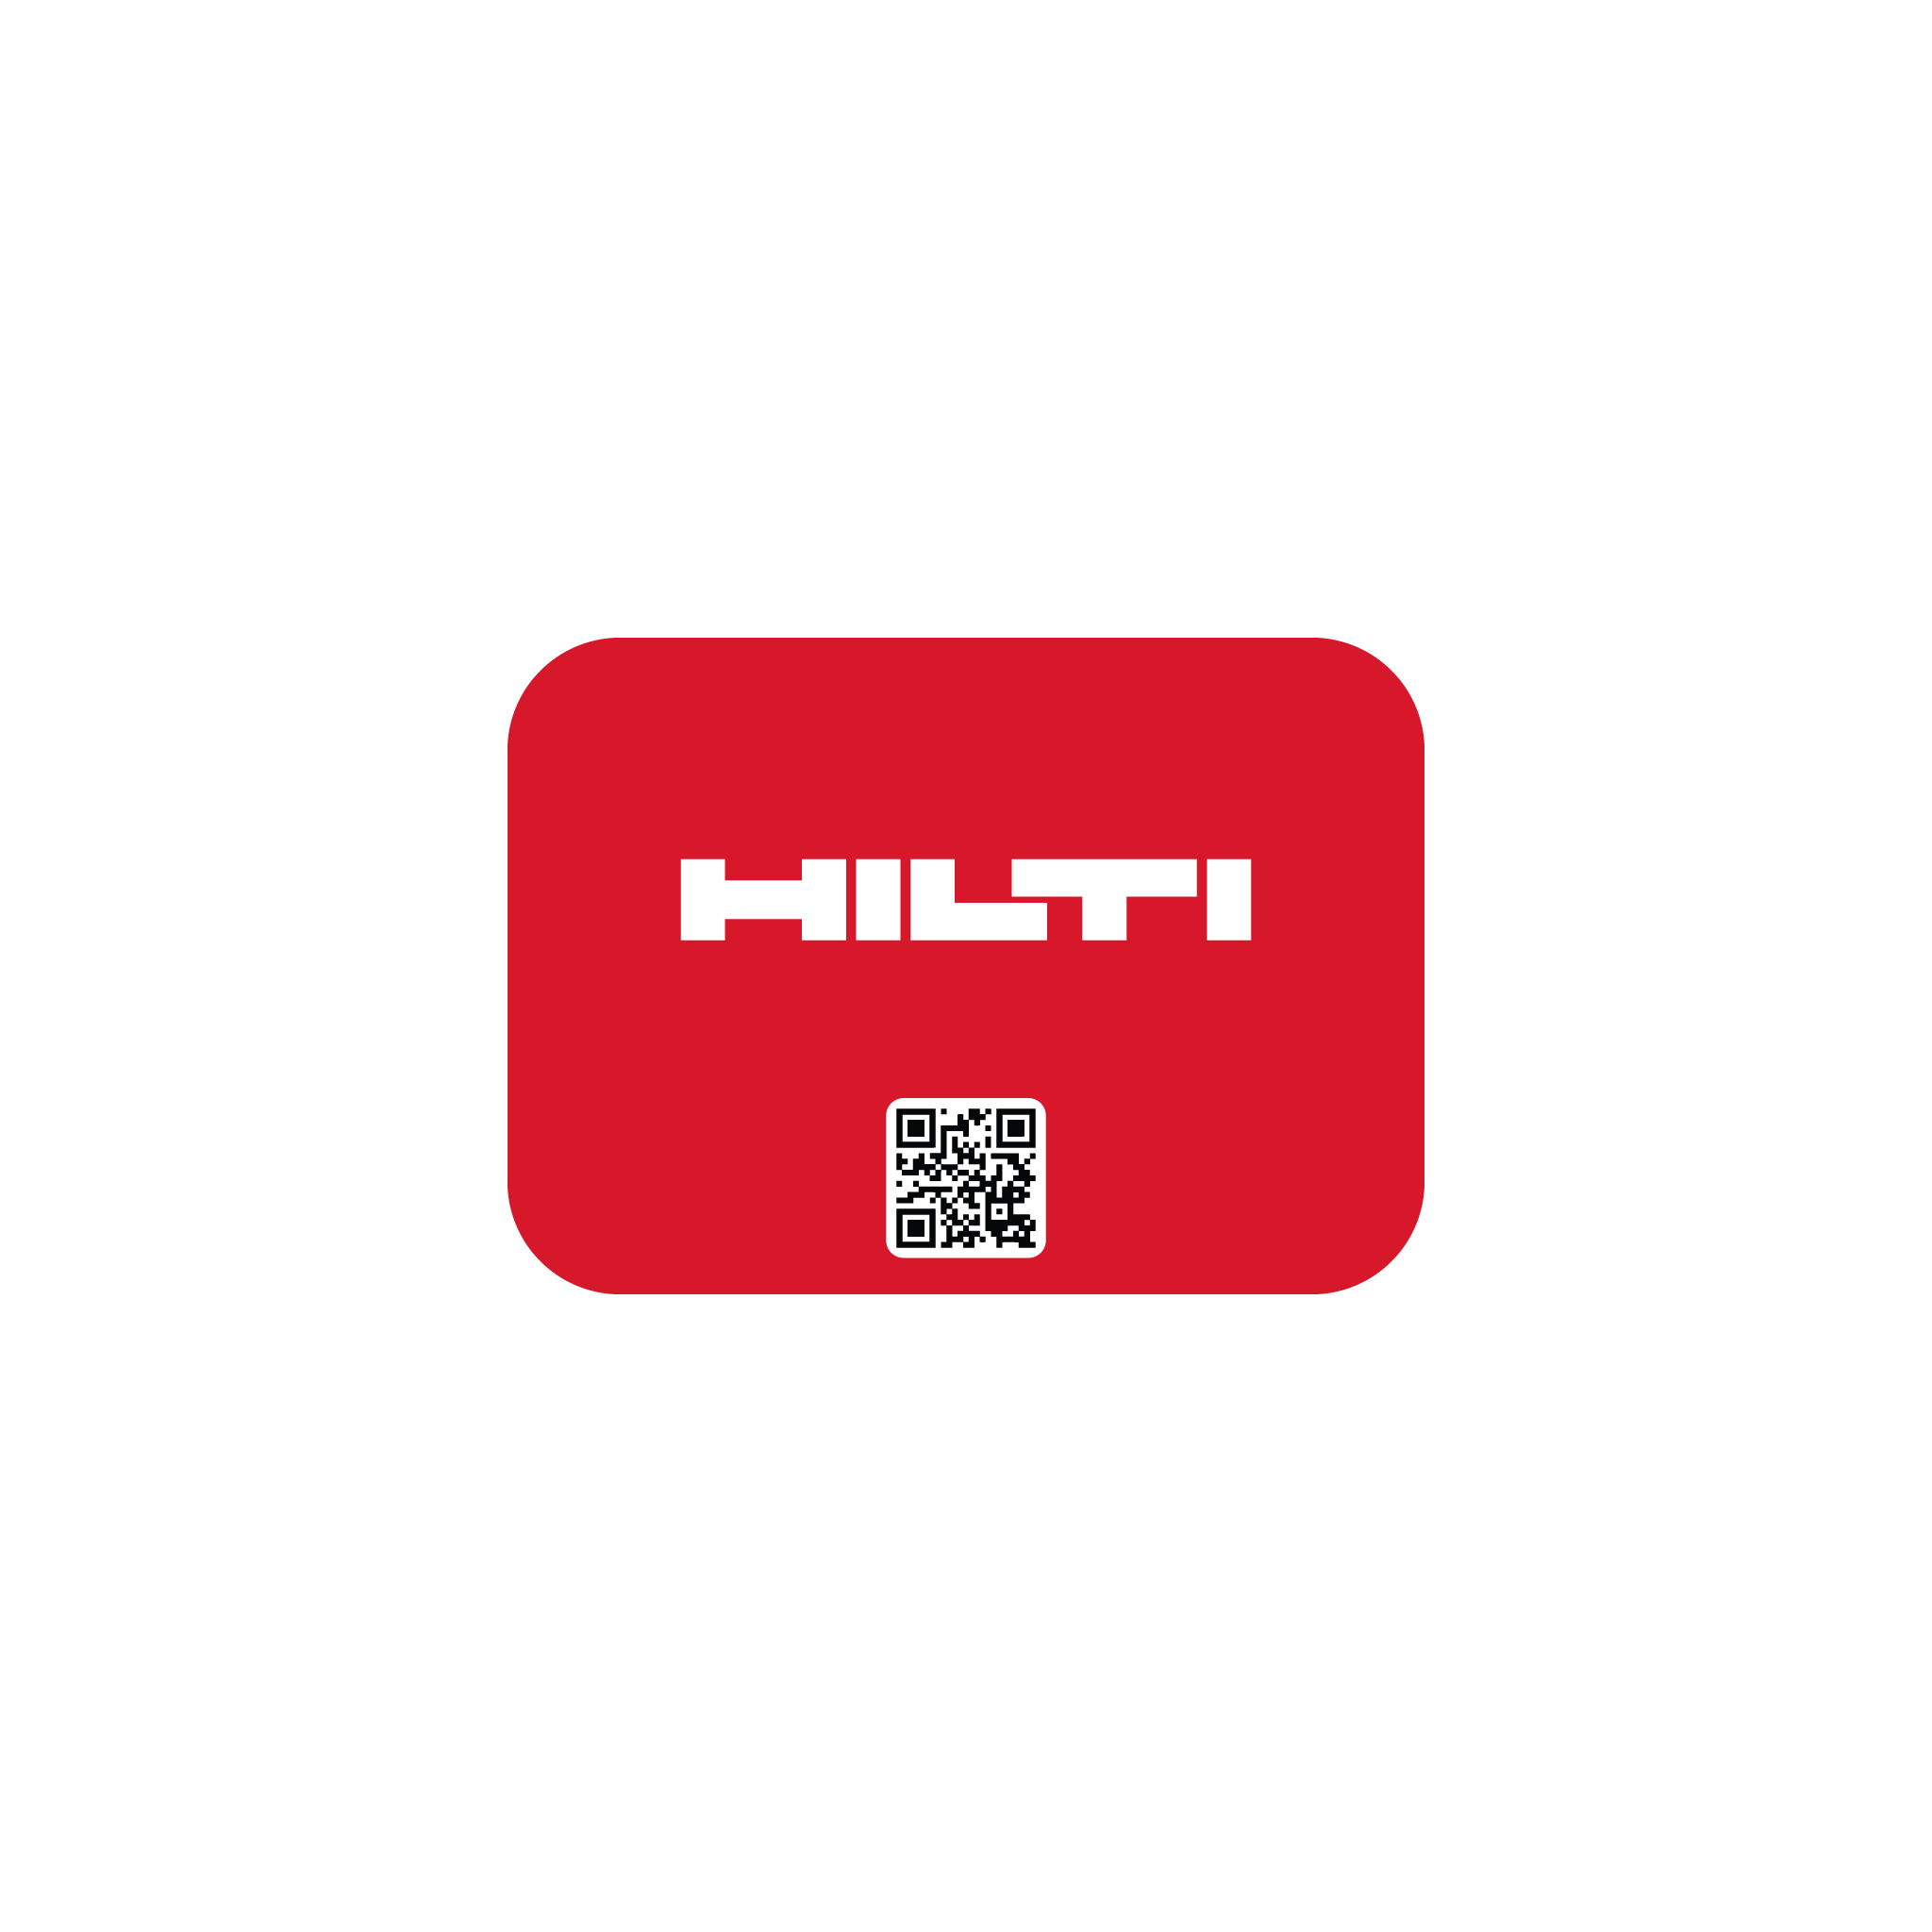 Hilti Custom PhoneCard (Red) - Design #1